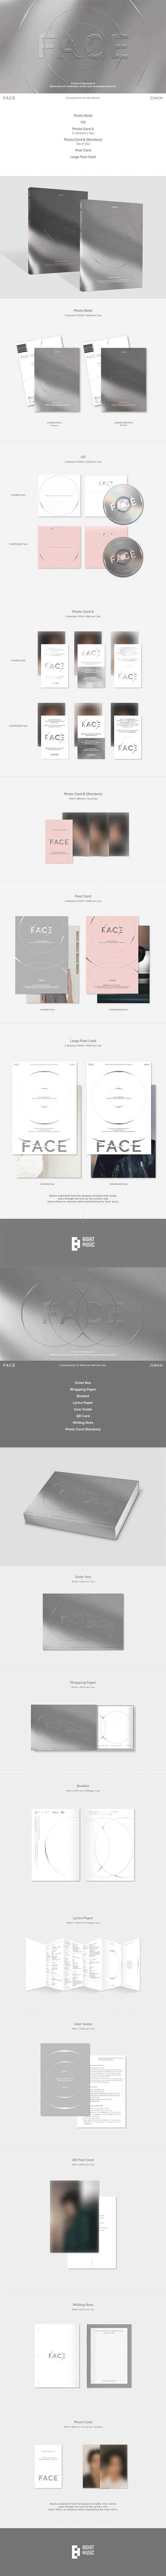 jimin-face-set-+-weverse-album-set-wholesale